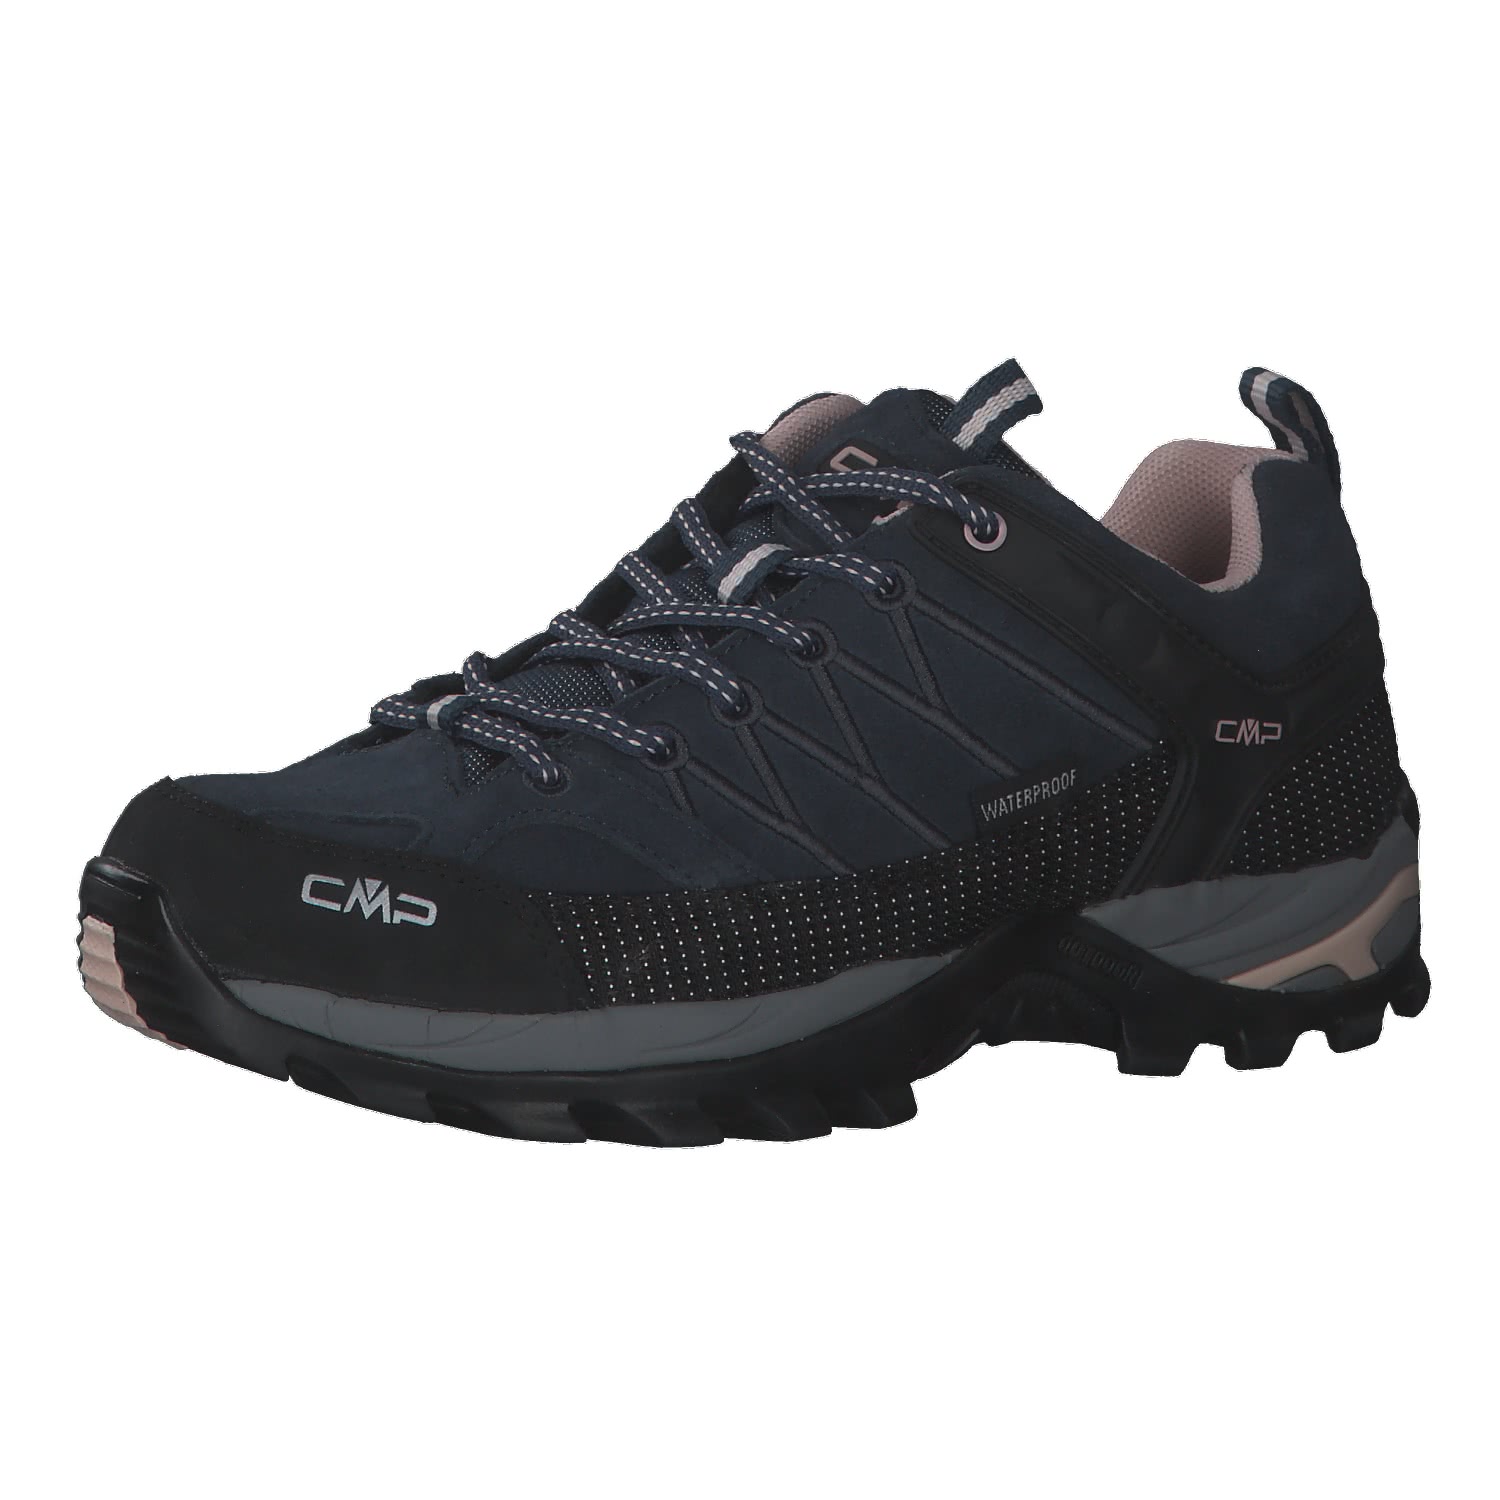 CMP Damen Trekking Schuhe Rigel Low 3Q13246